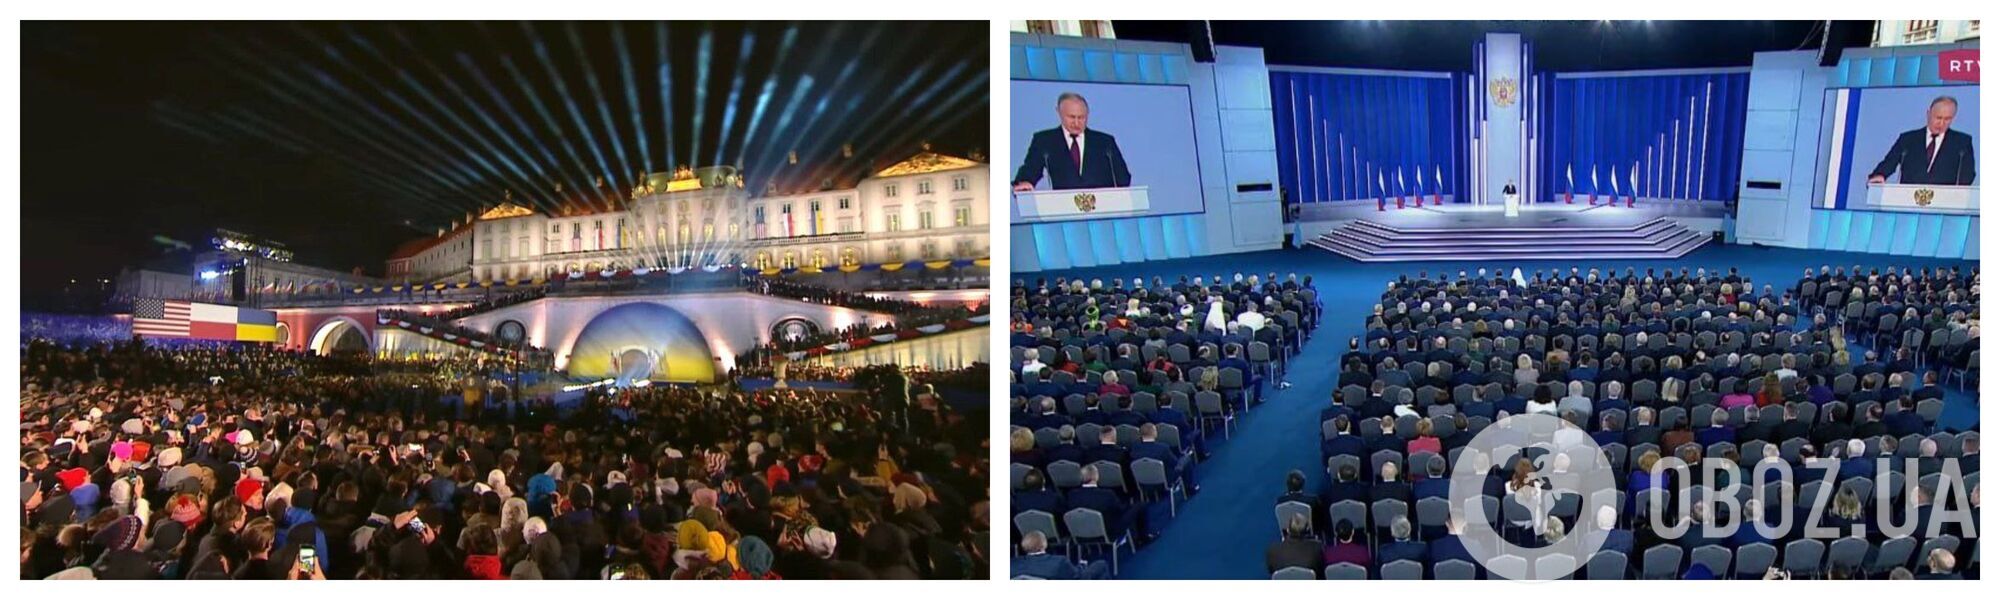 Порівняння виступів Байдена та Путіна 21 лютого 2023 року